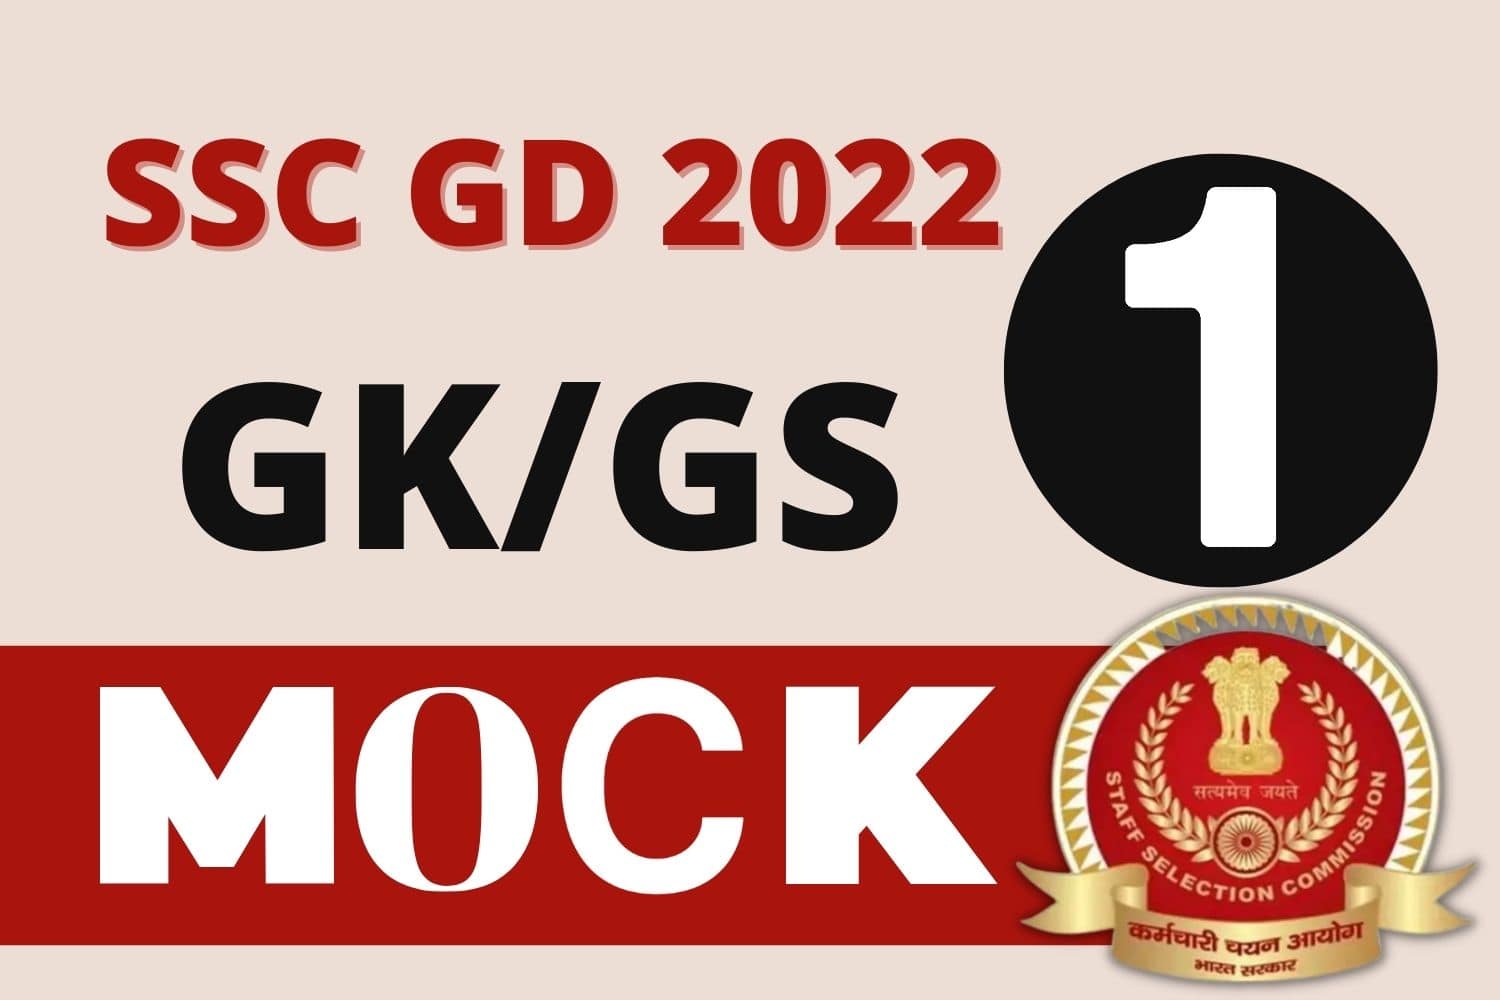 SSC GD GK/GS Mock Test 1 : परीक्षा देने से पहले इन 25 महत्वपूर्ण प्रश्नों का कर लें अध्ययन